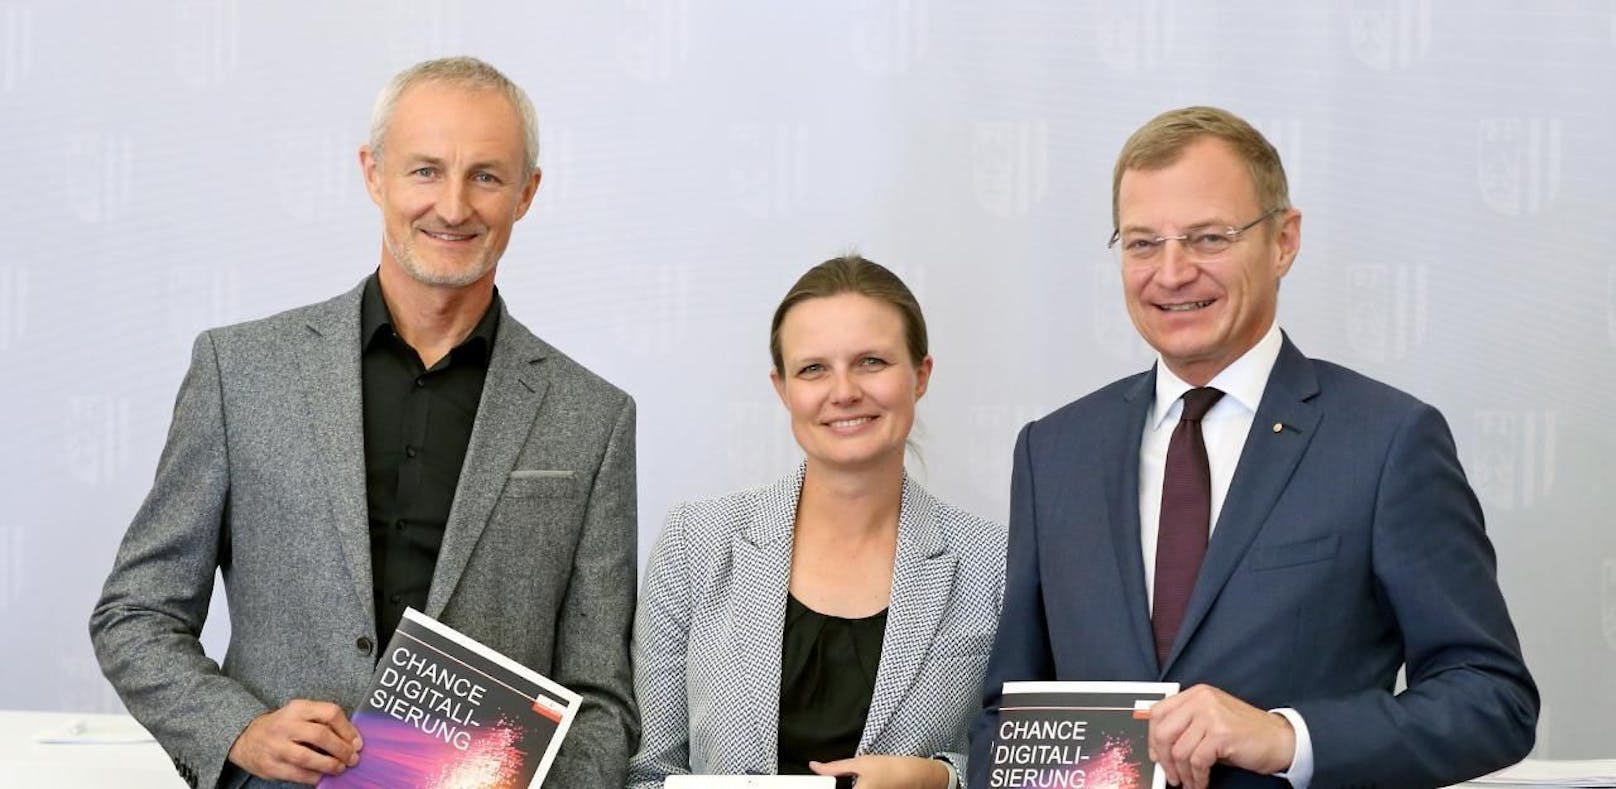  E-Government-Experte Reinhard Haider, LH Thomas Stelzer und  Bettina Williger (Fraunhofer-Gesellschaft Nürnberg, v.li.) sehen viele Chancen für Gemeinden durch die Digitalisierung.